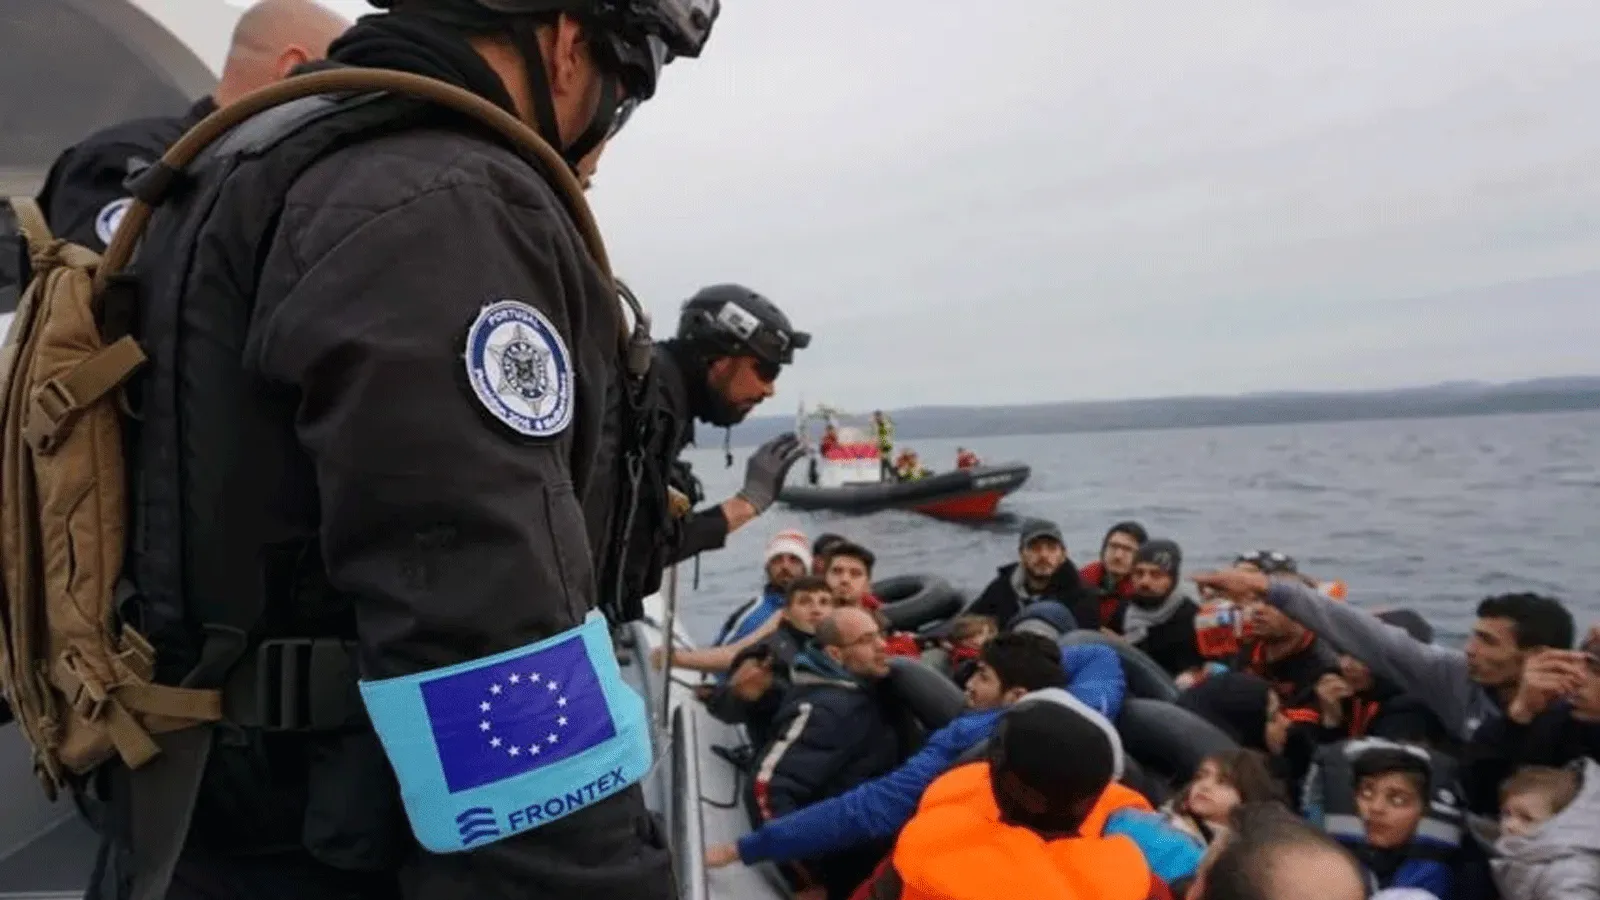 "فرونتكس" السوريون في مقدمة طالبي اللجوء إلى دول الاتحاد الأوروبي